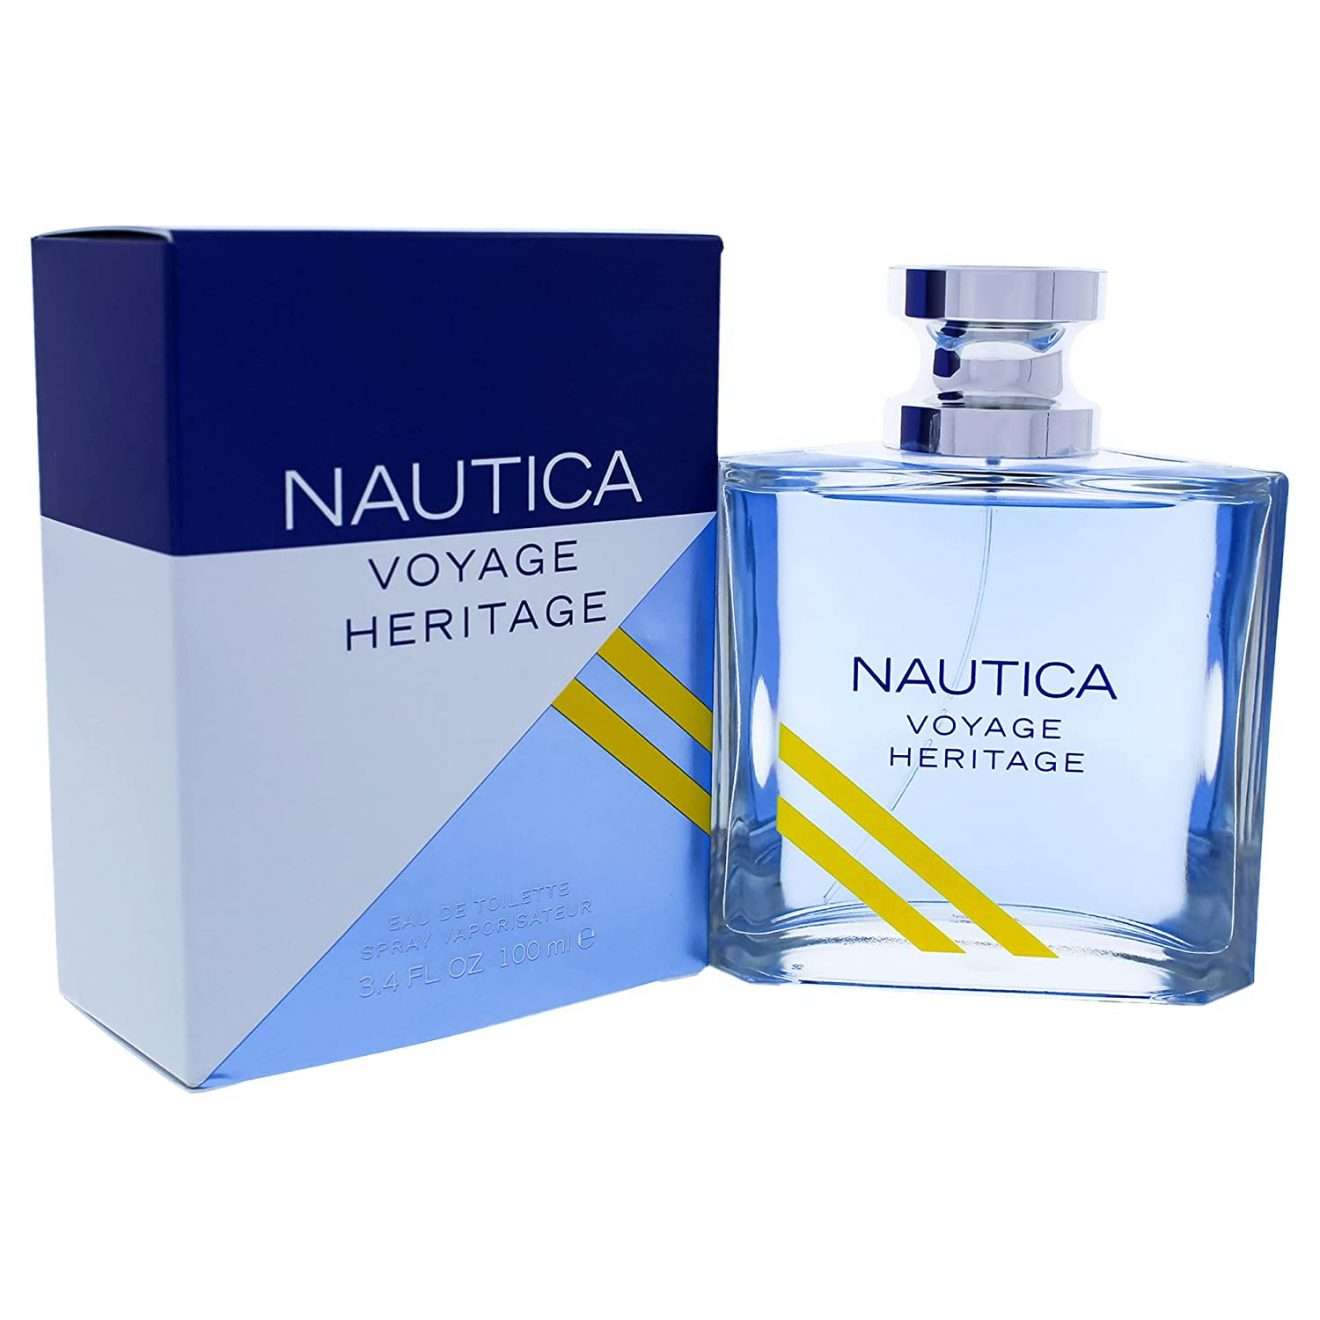 nautica voyage heritage precio